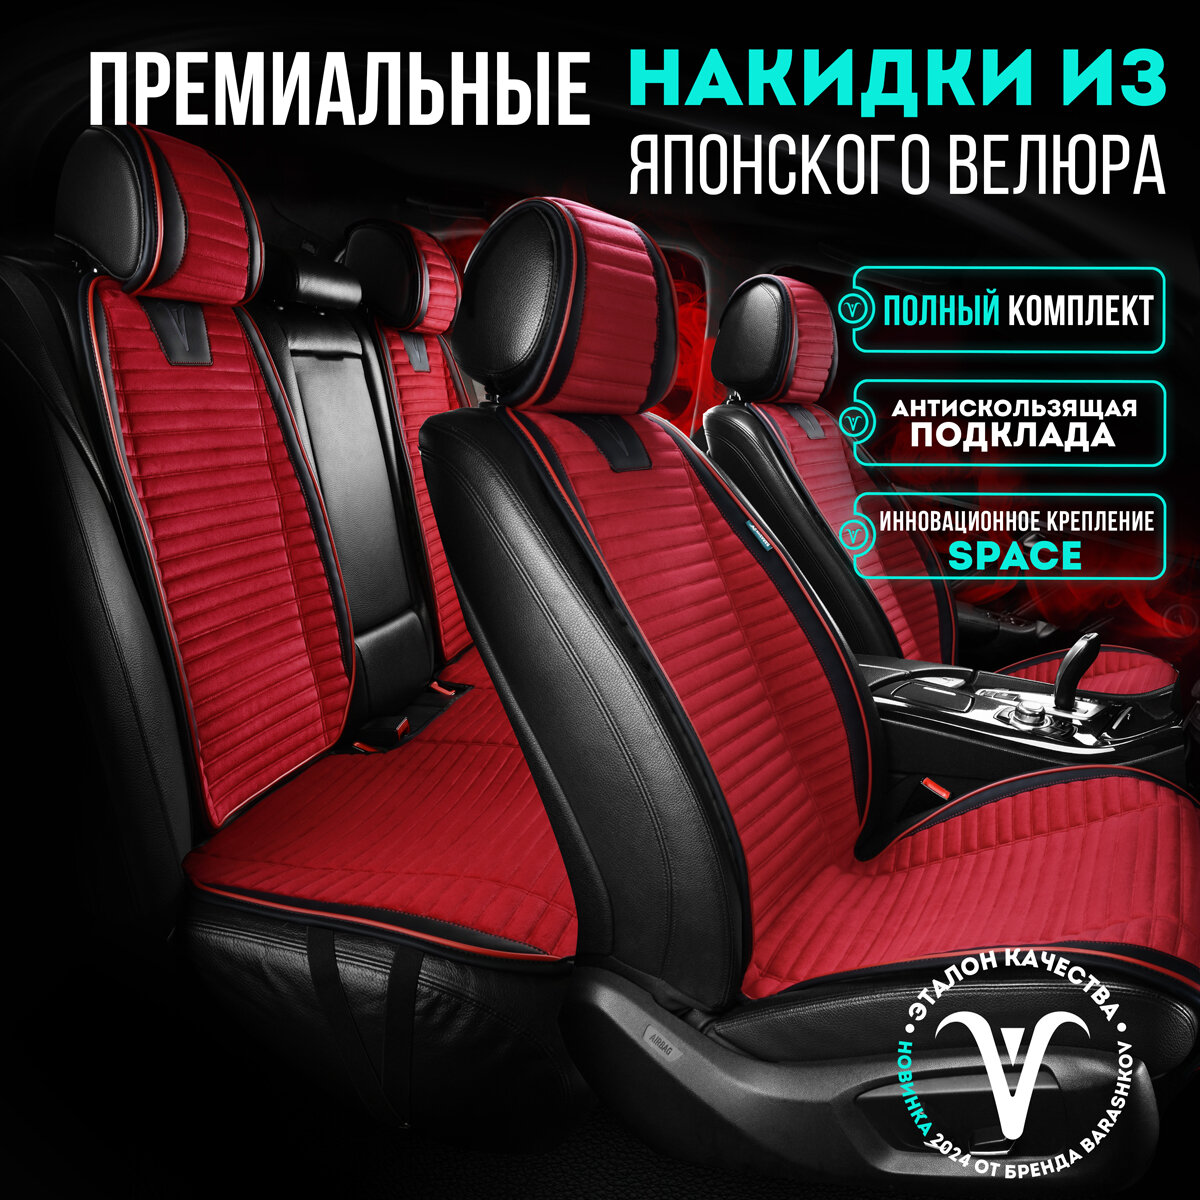 Комплект накидок на передние и задние сиденья из велюра , Модель PREMIUM. Красный,черный,красный